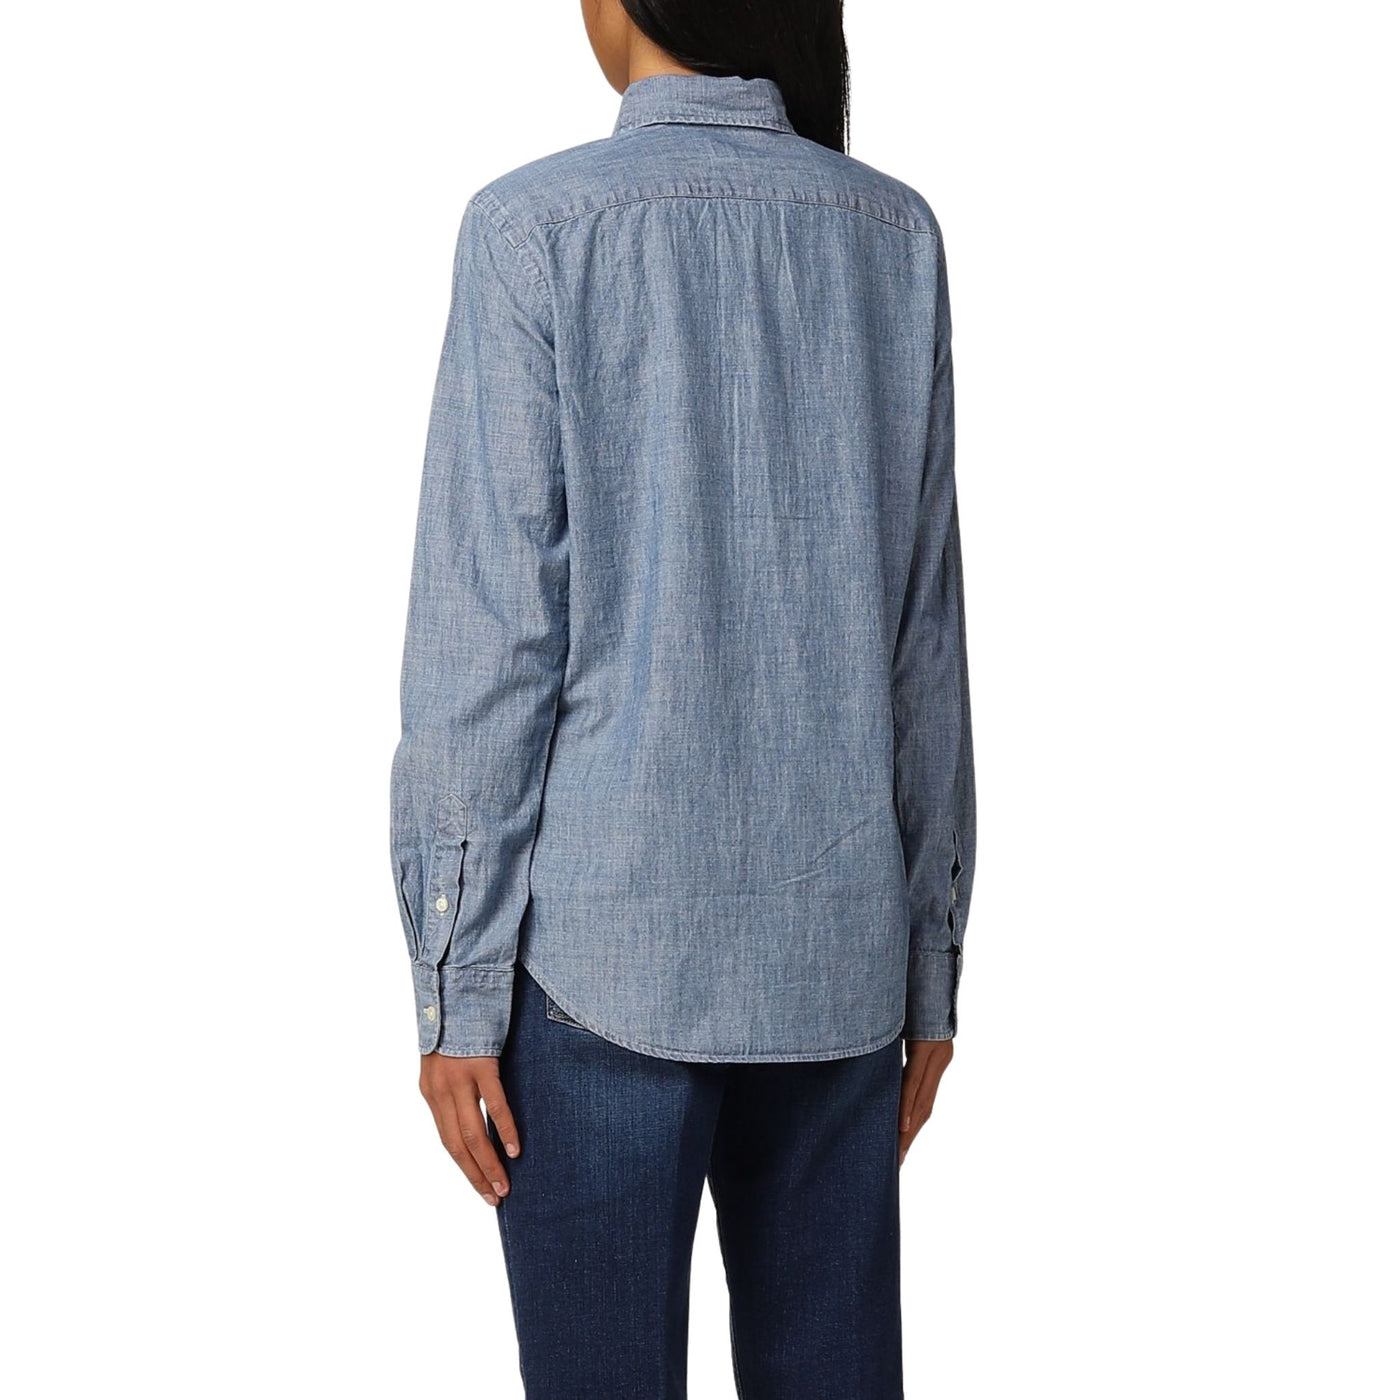 Camicia donna in denim Polo Ralph Lauren su modella vista retro